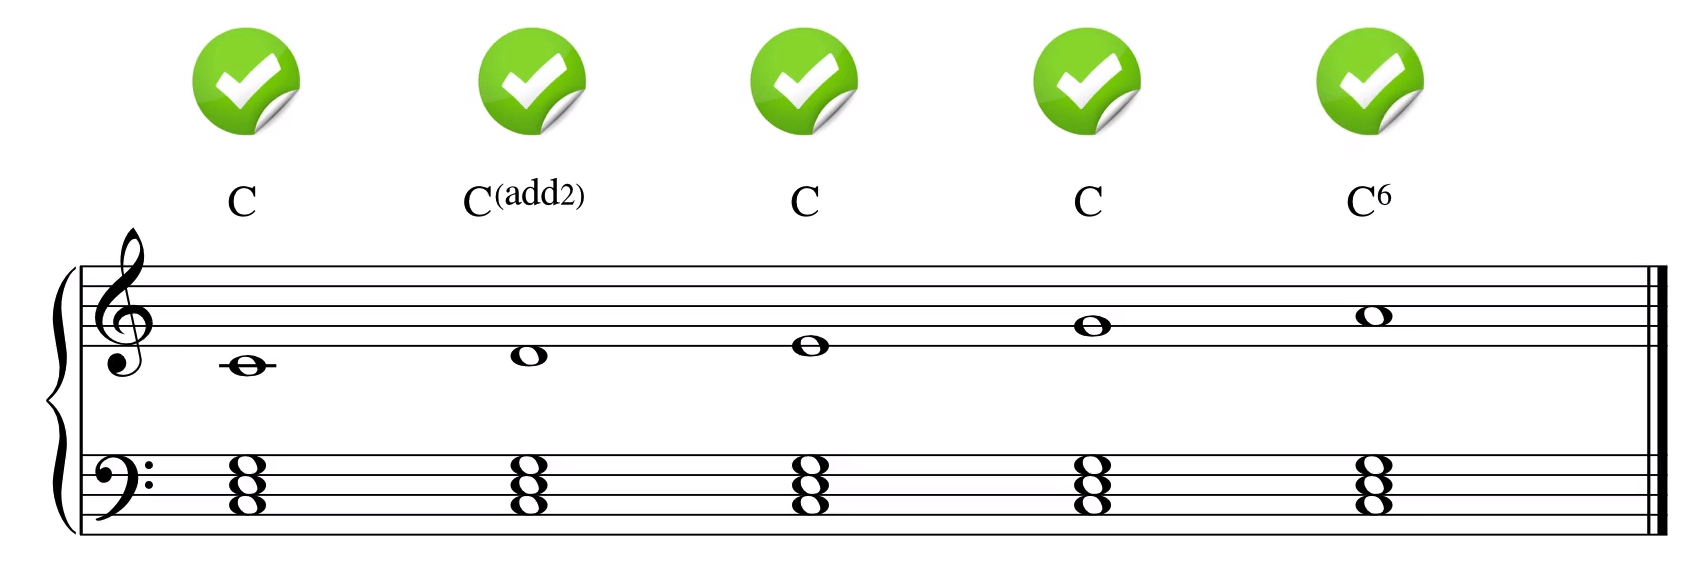 五声音阶放在一级和弦上